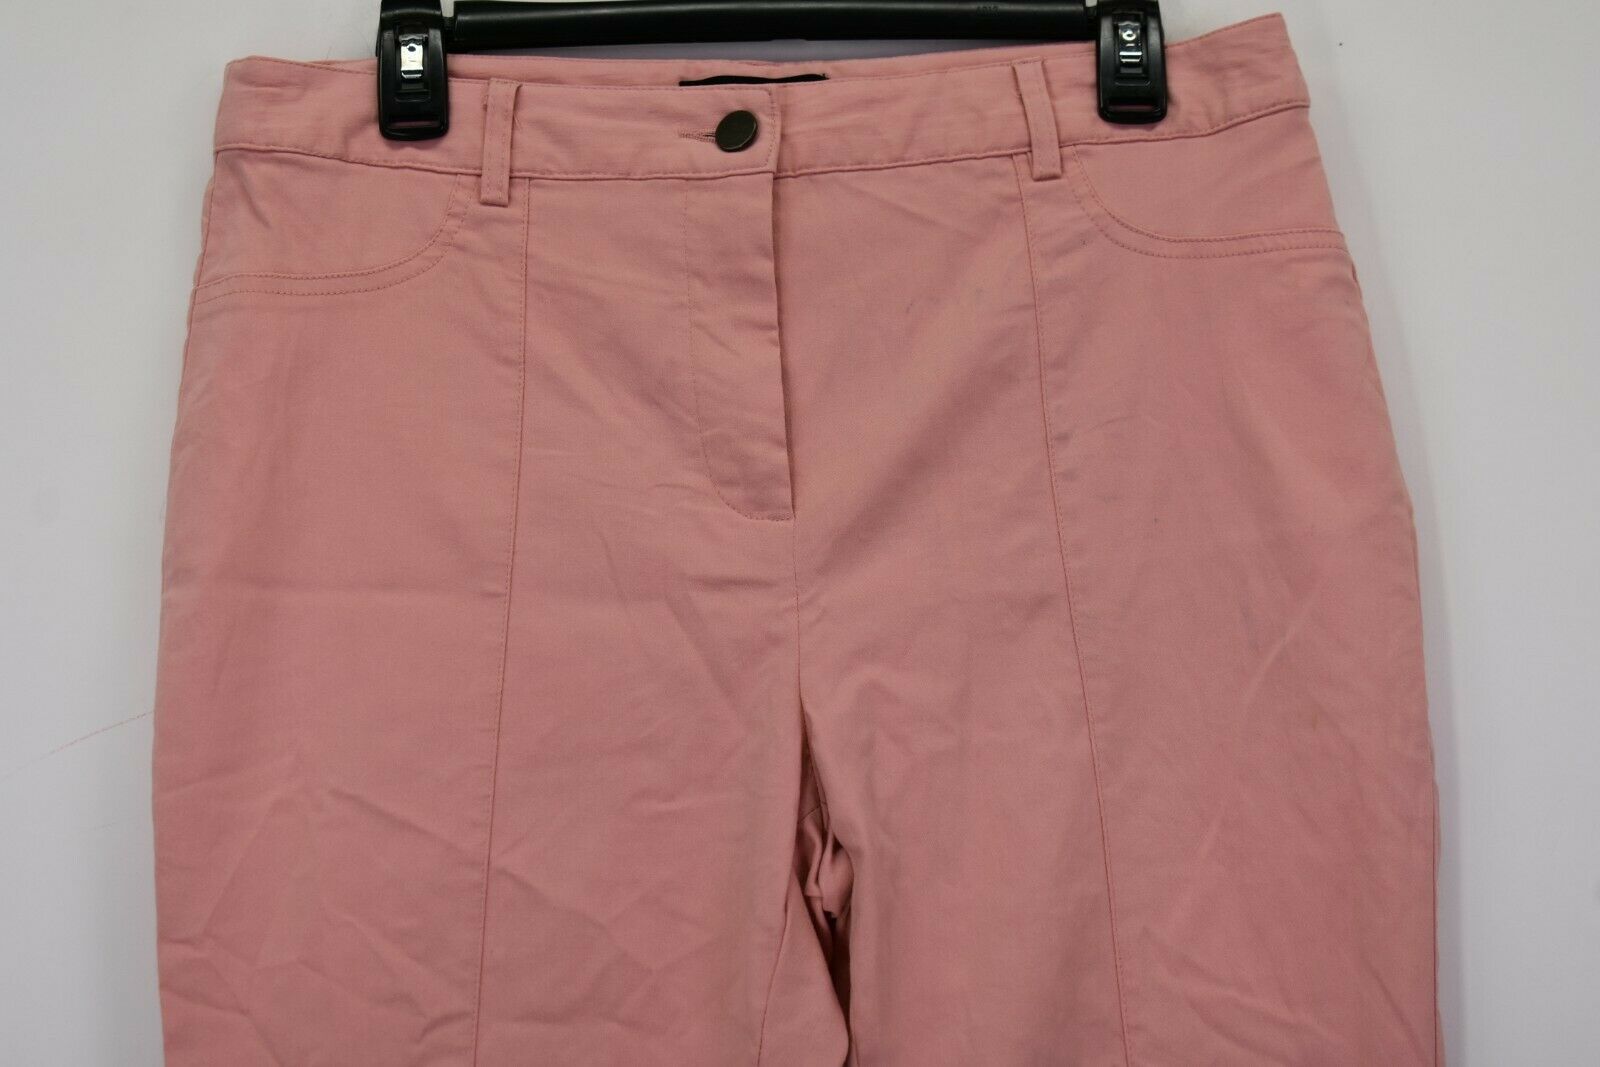 Who What Wear Women's 12 Rayon/Nylon/Spandex Blend Pocket-less Pants ...